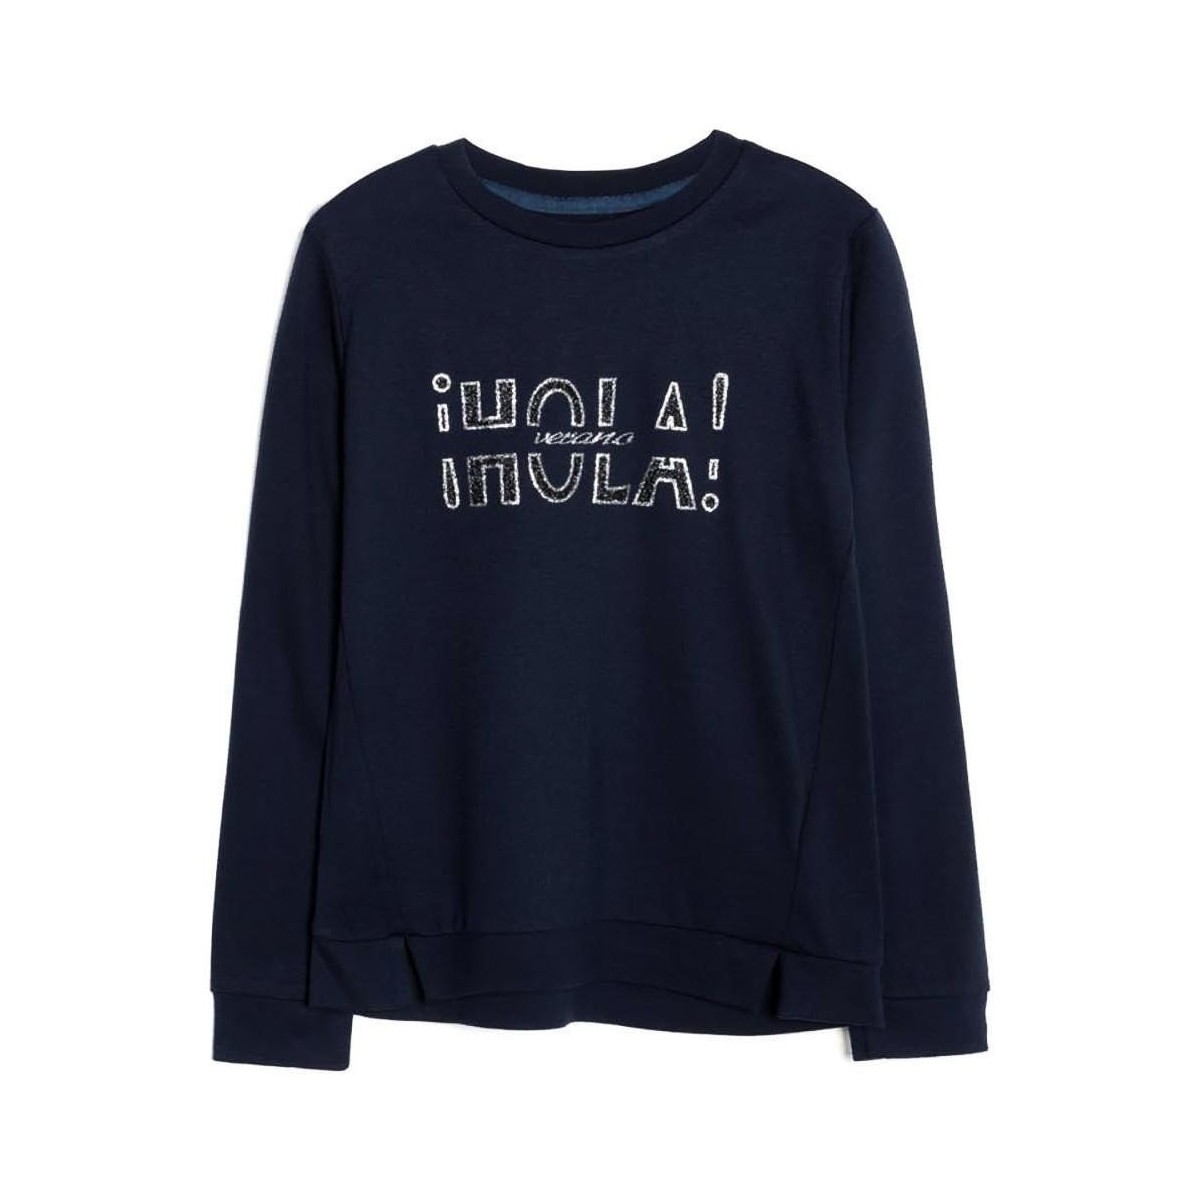 Textiel Meisjes Sweaters / Sweatshirts Mayoral  Blauw